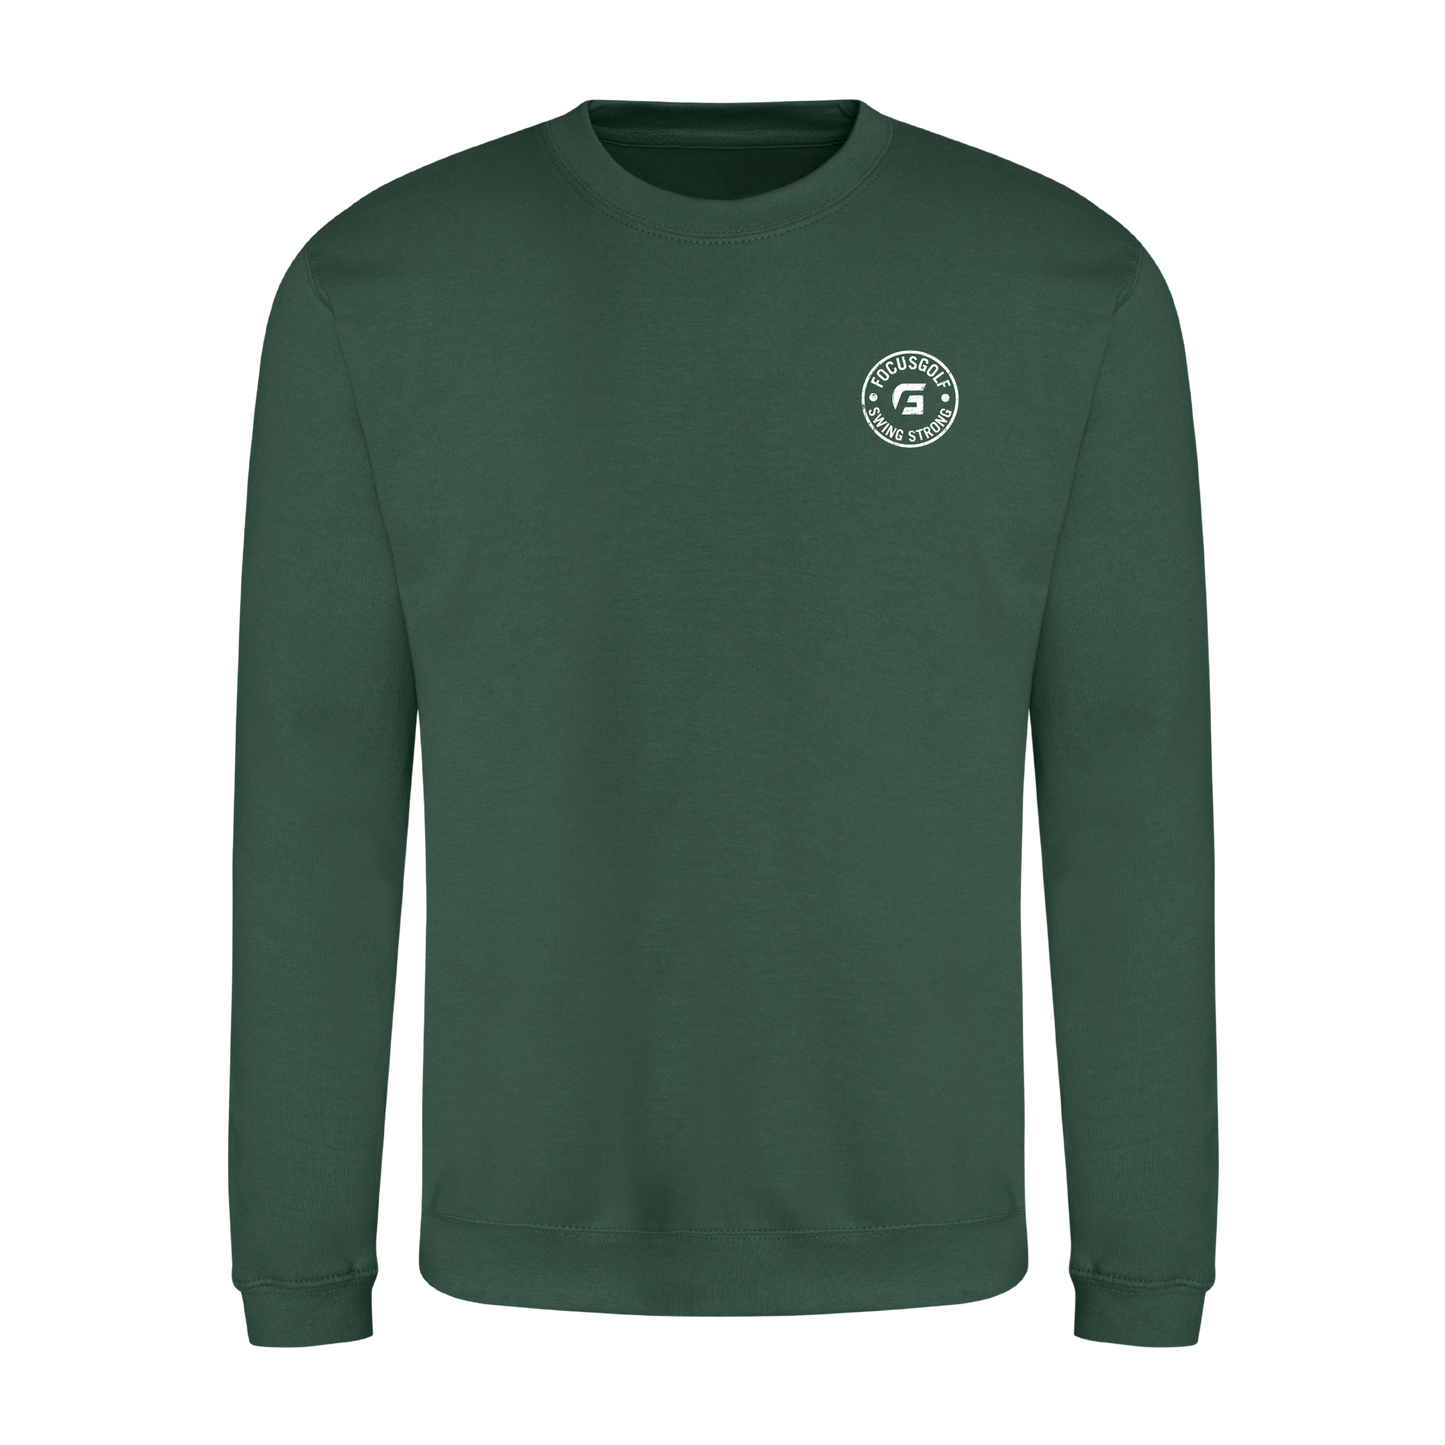 Focusgolf Honor Men's Bottle Green Sweatshirt